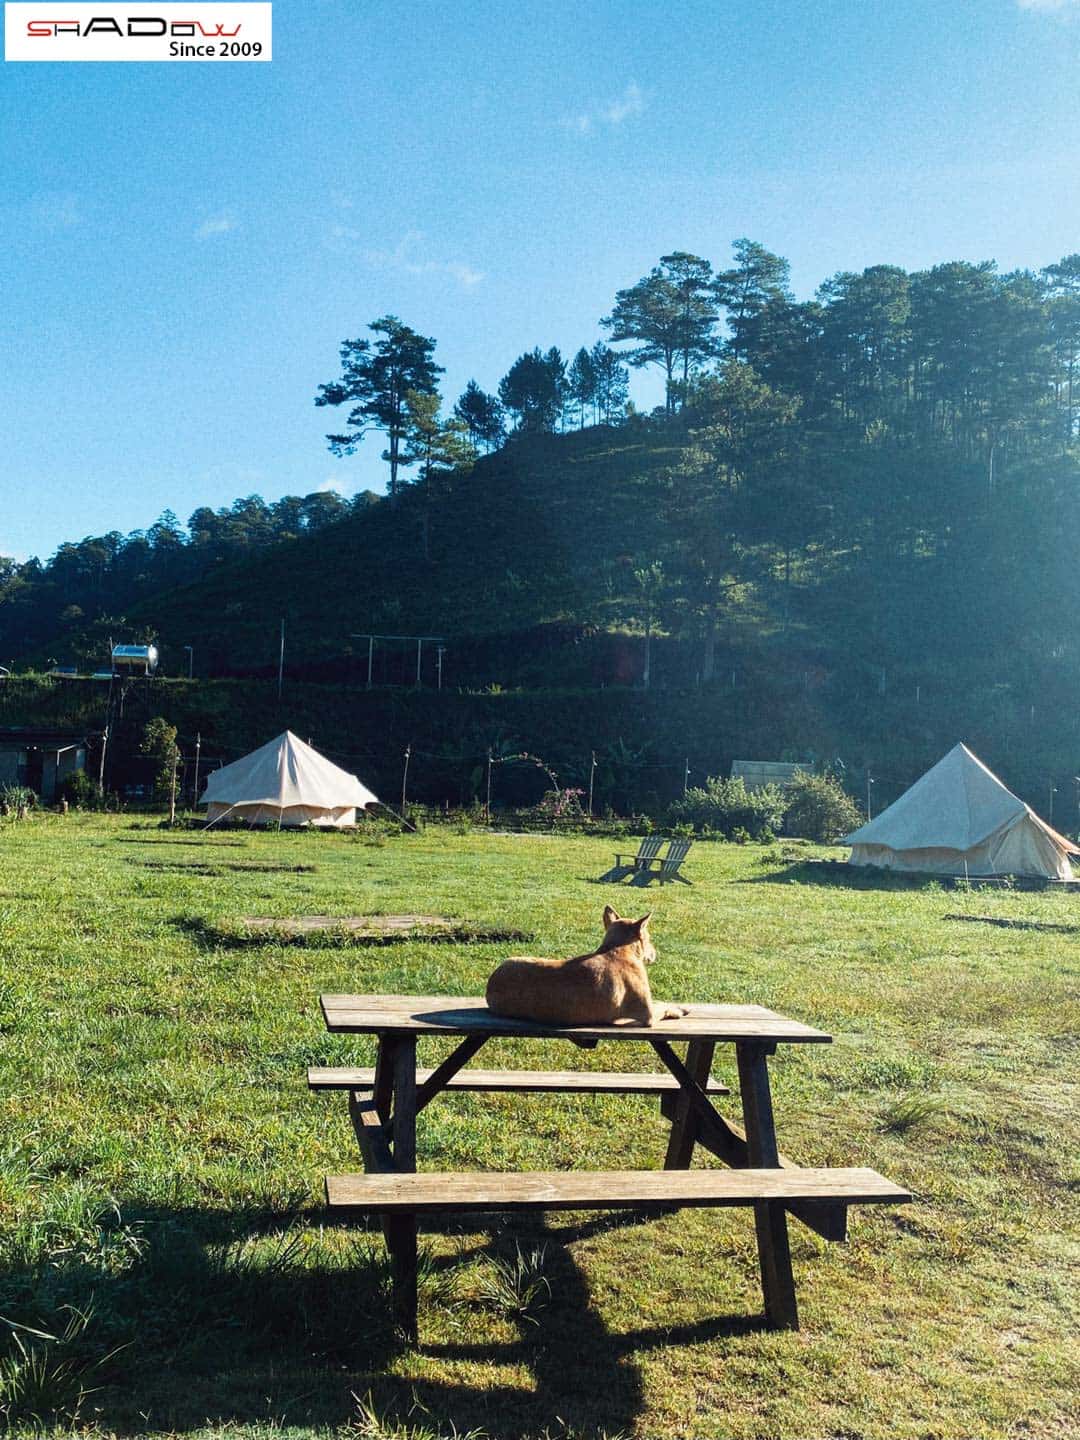 Dalat Camp